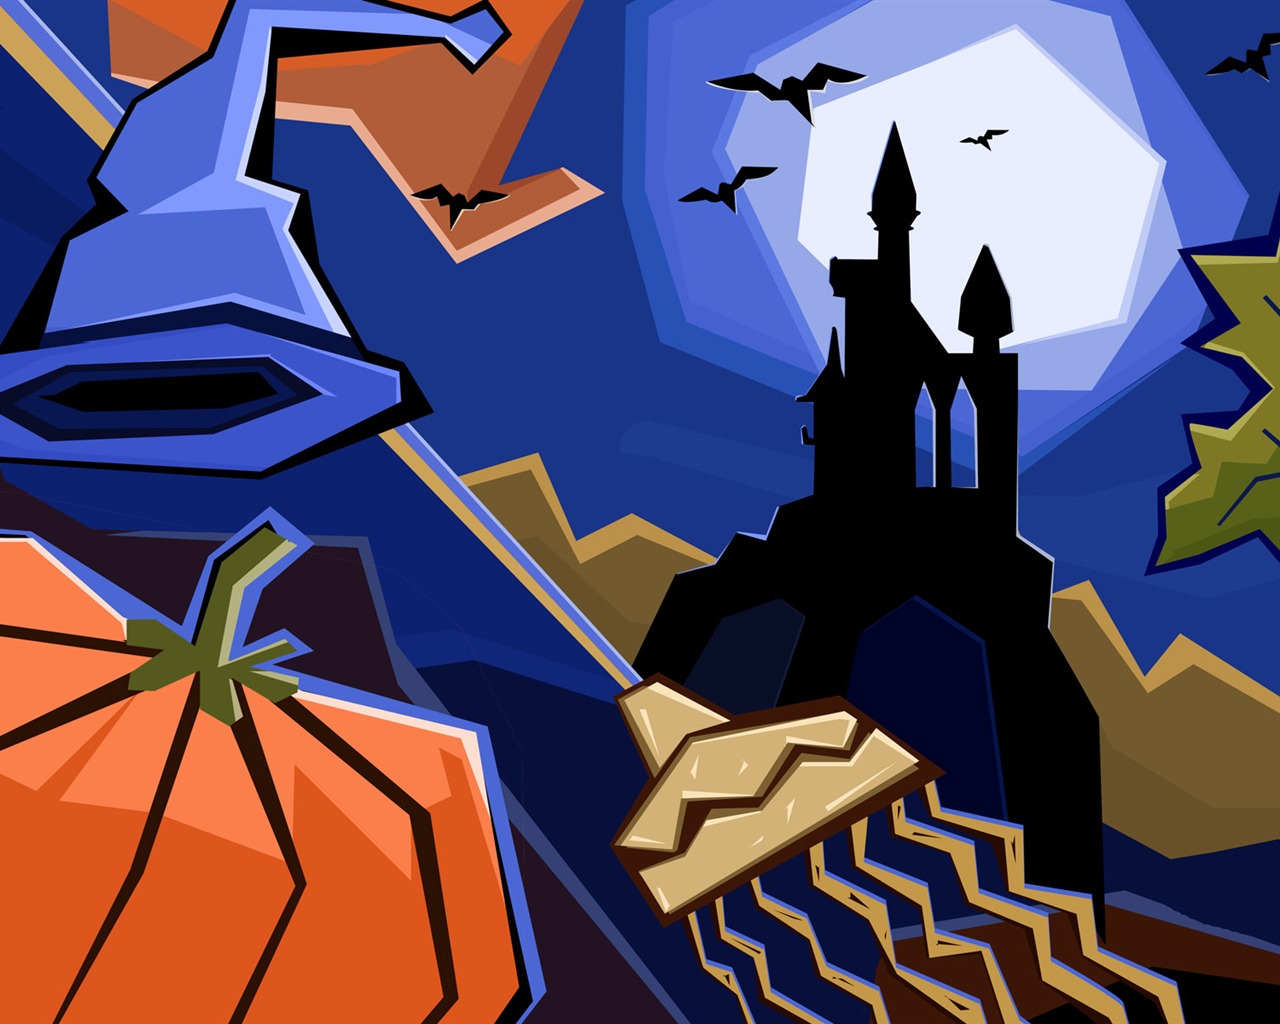 Fondos de Halloween temáticos (5) #20 - 1280x1024